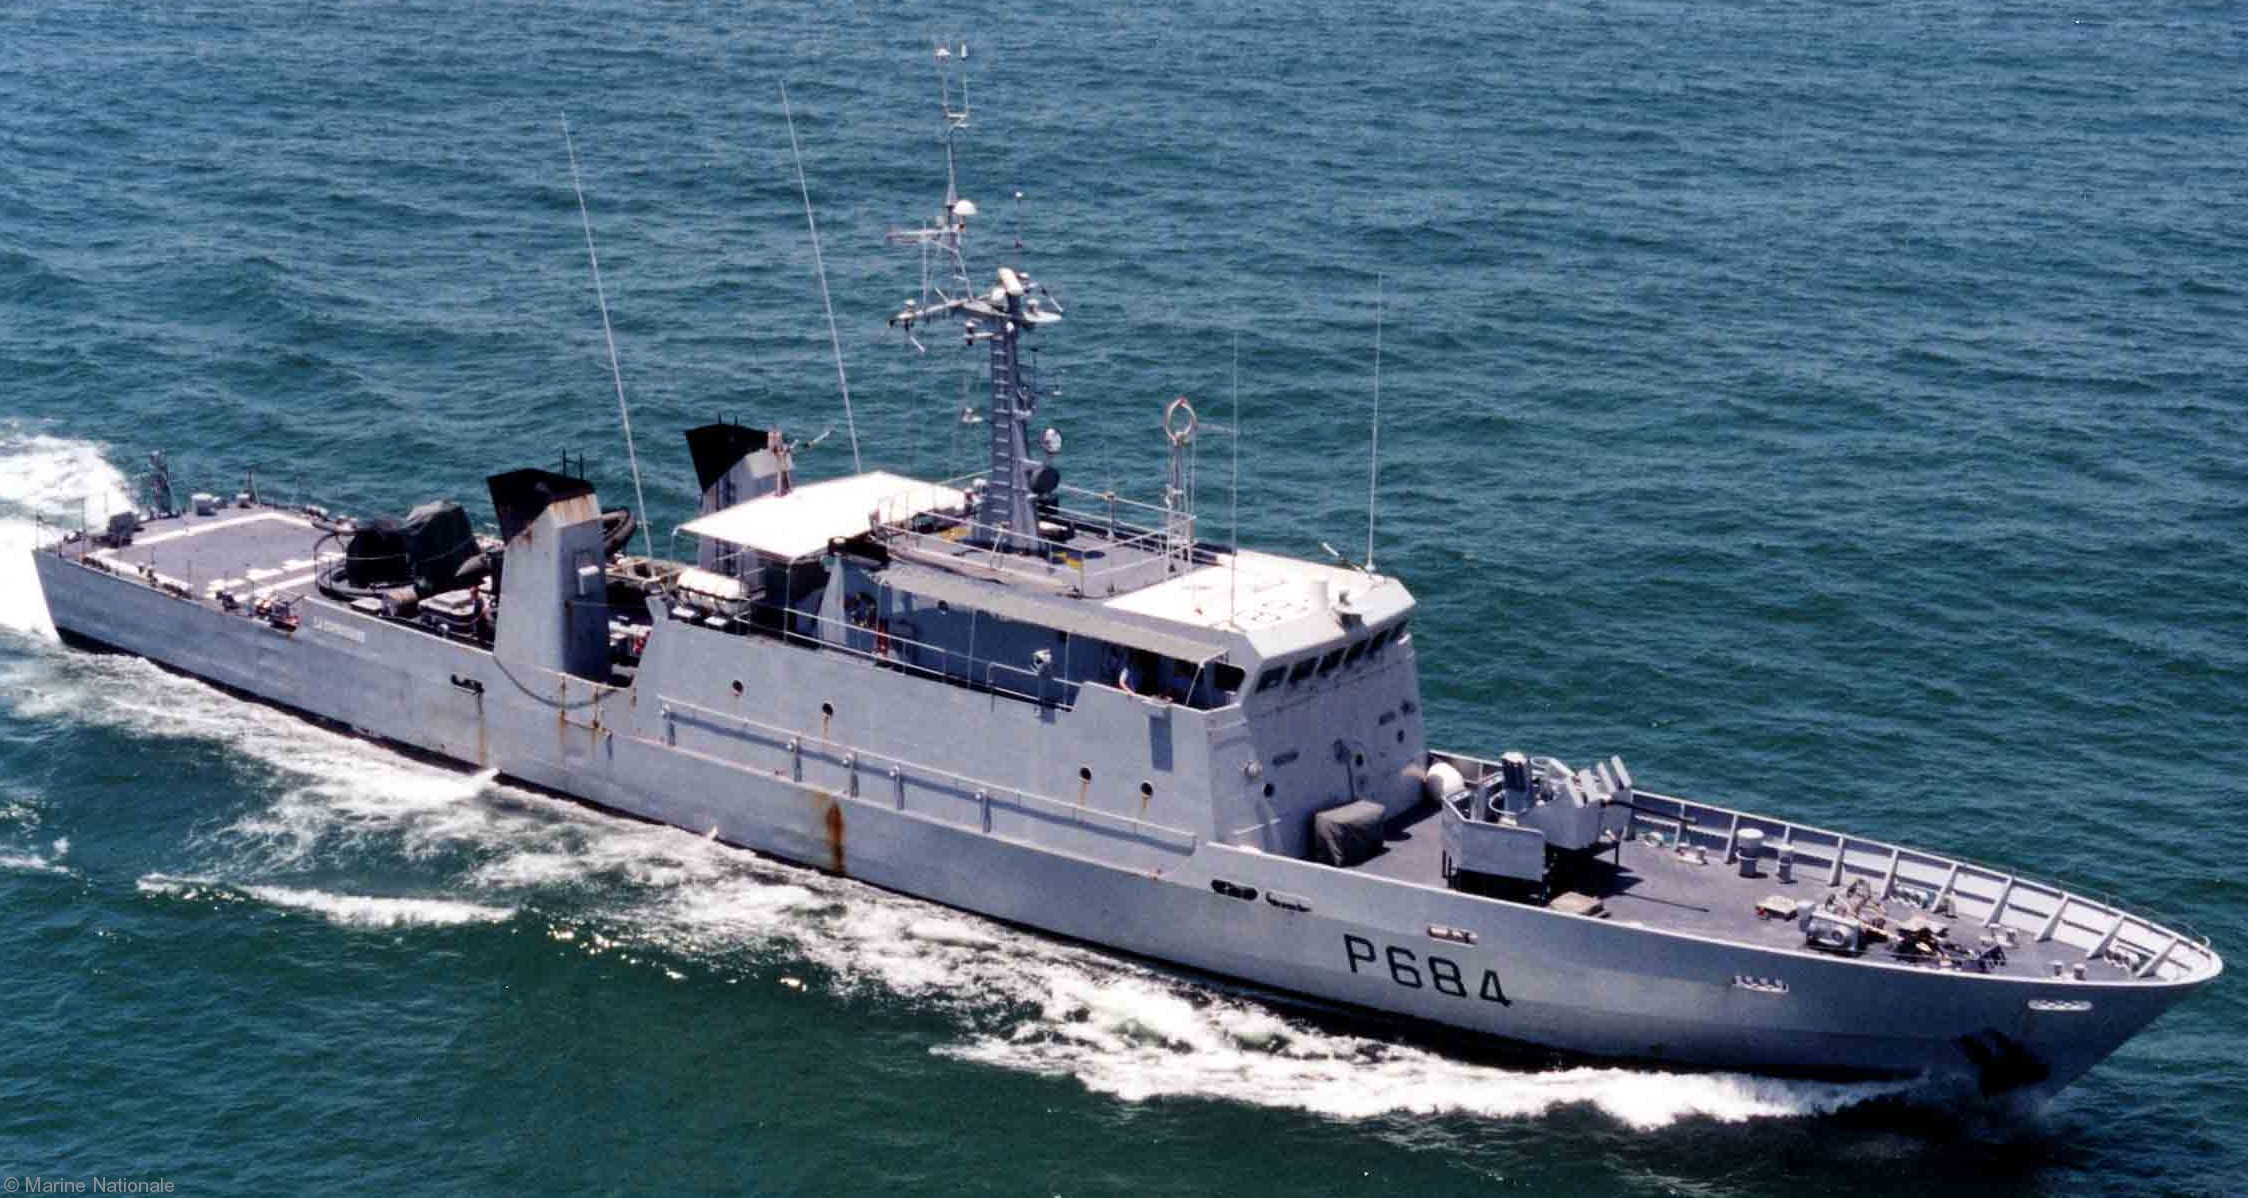 p-684 la capricieuse l'audacieuse p400 class patrol vessel french navy patrouilleur marine nationale 02